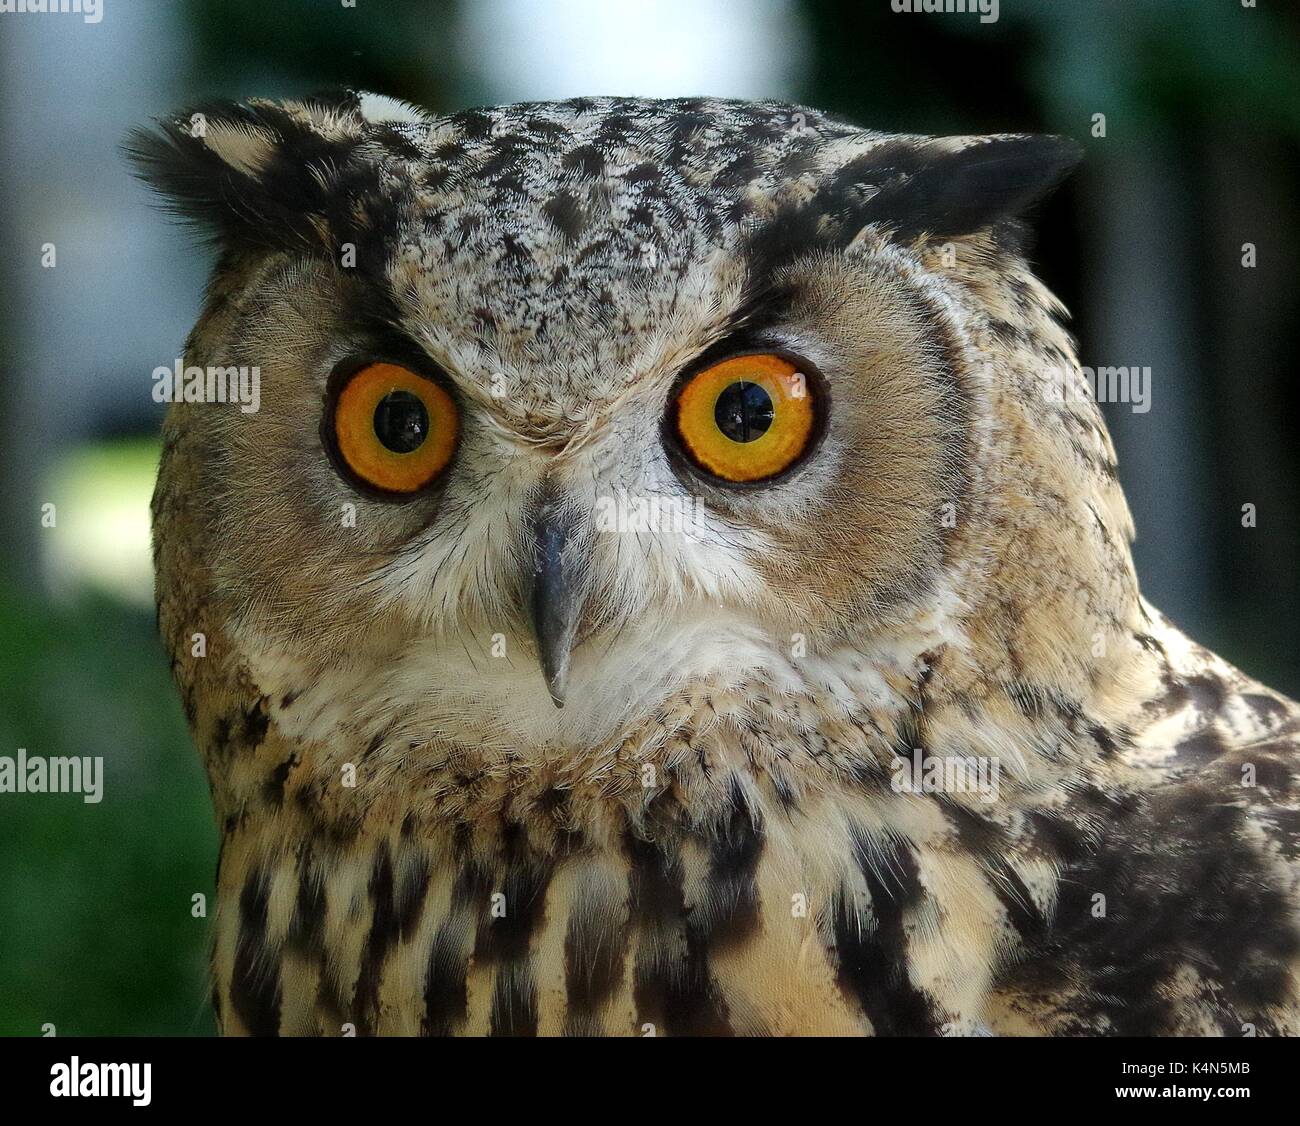 european eagle owl Stock Photo